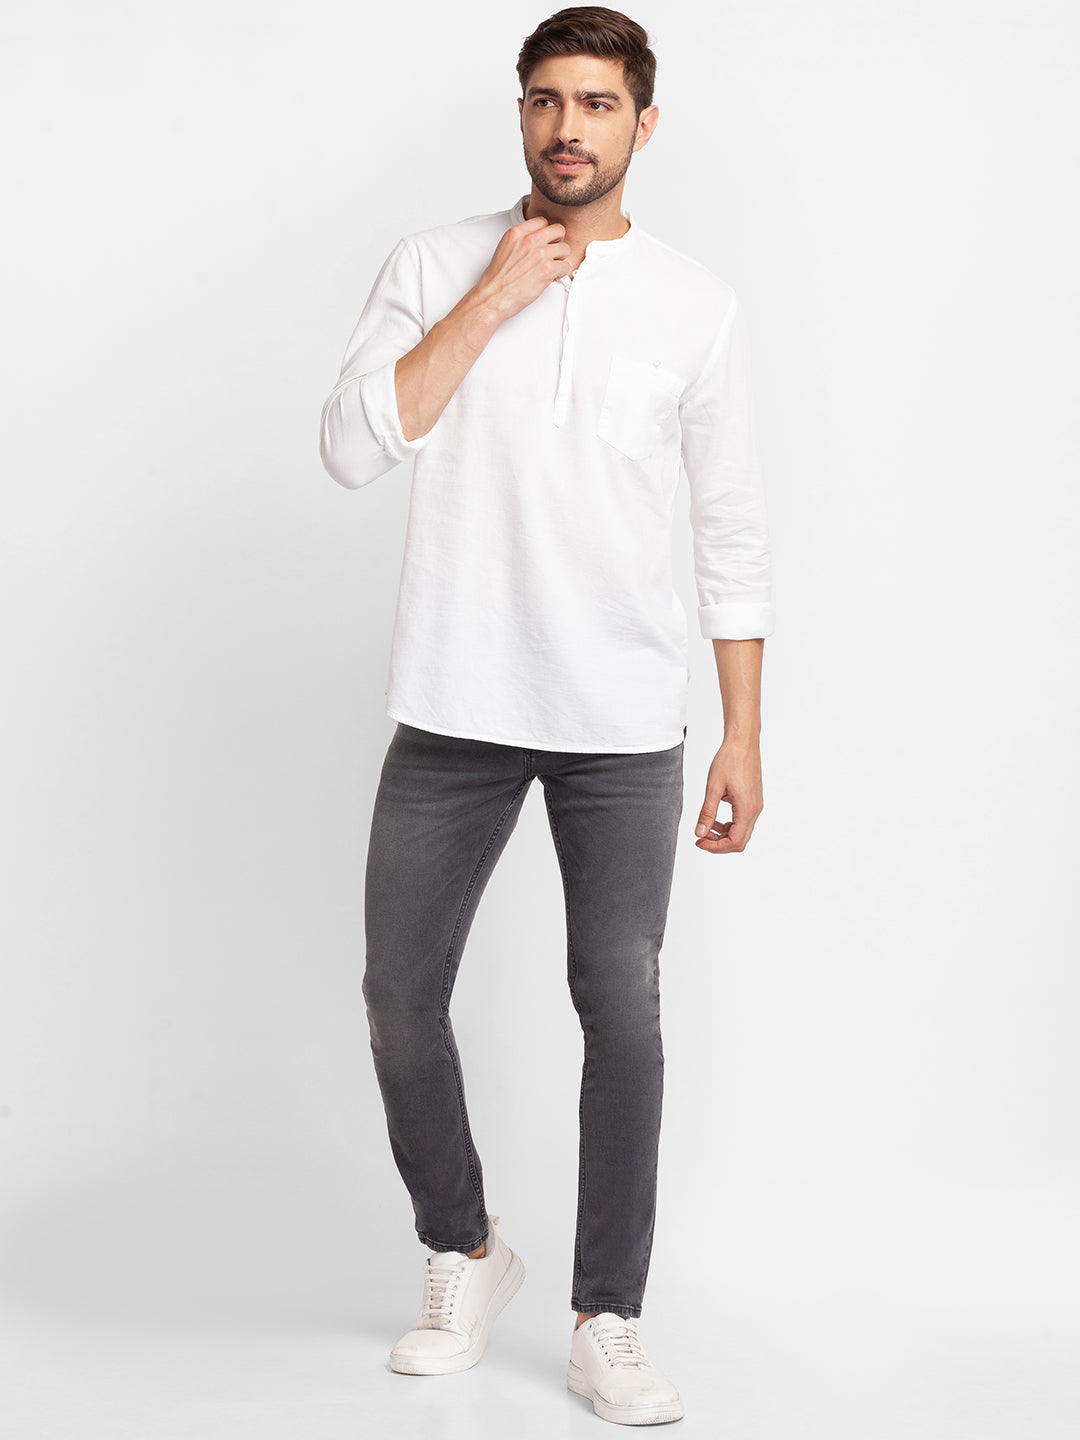 Spykar White Cotton Full Sleeve Plain Shirt Kurta For Men